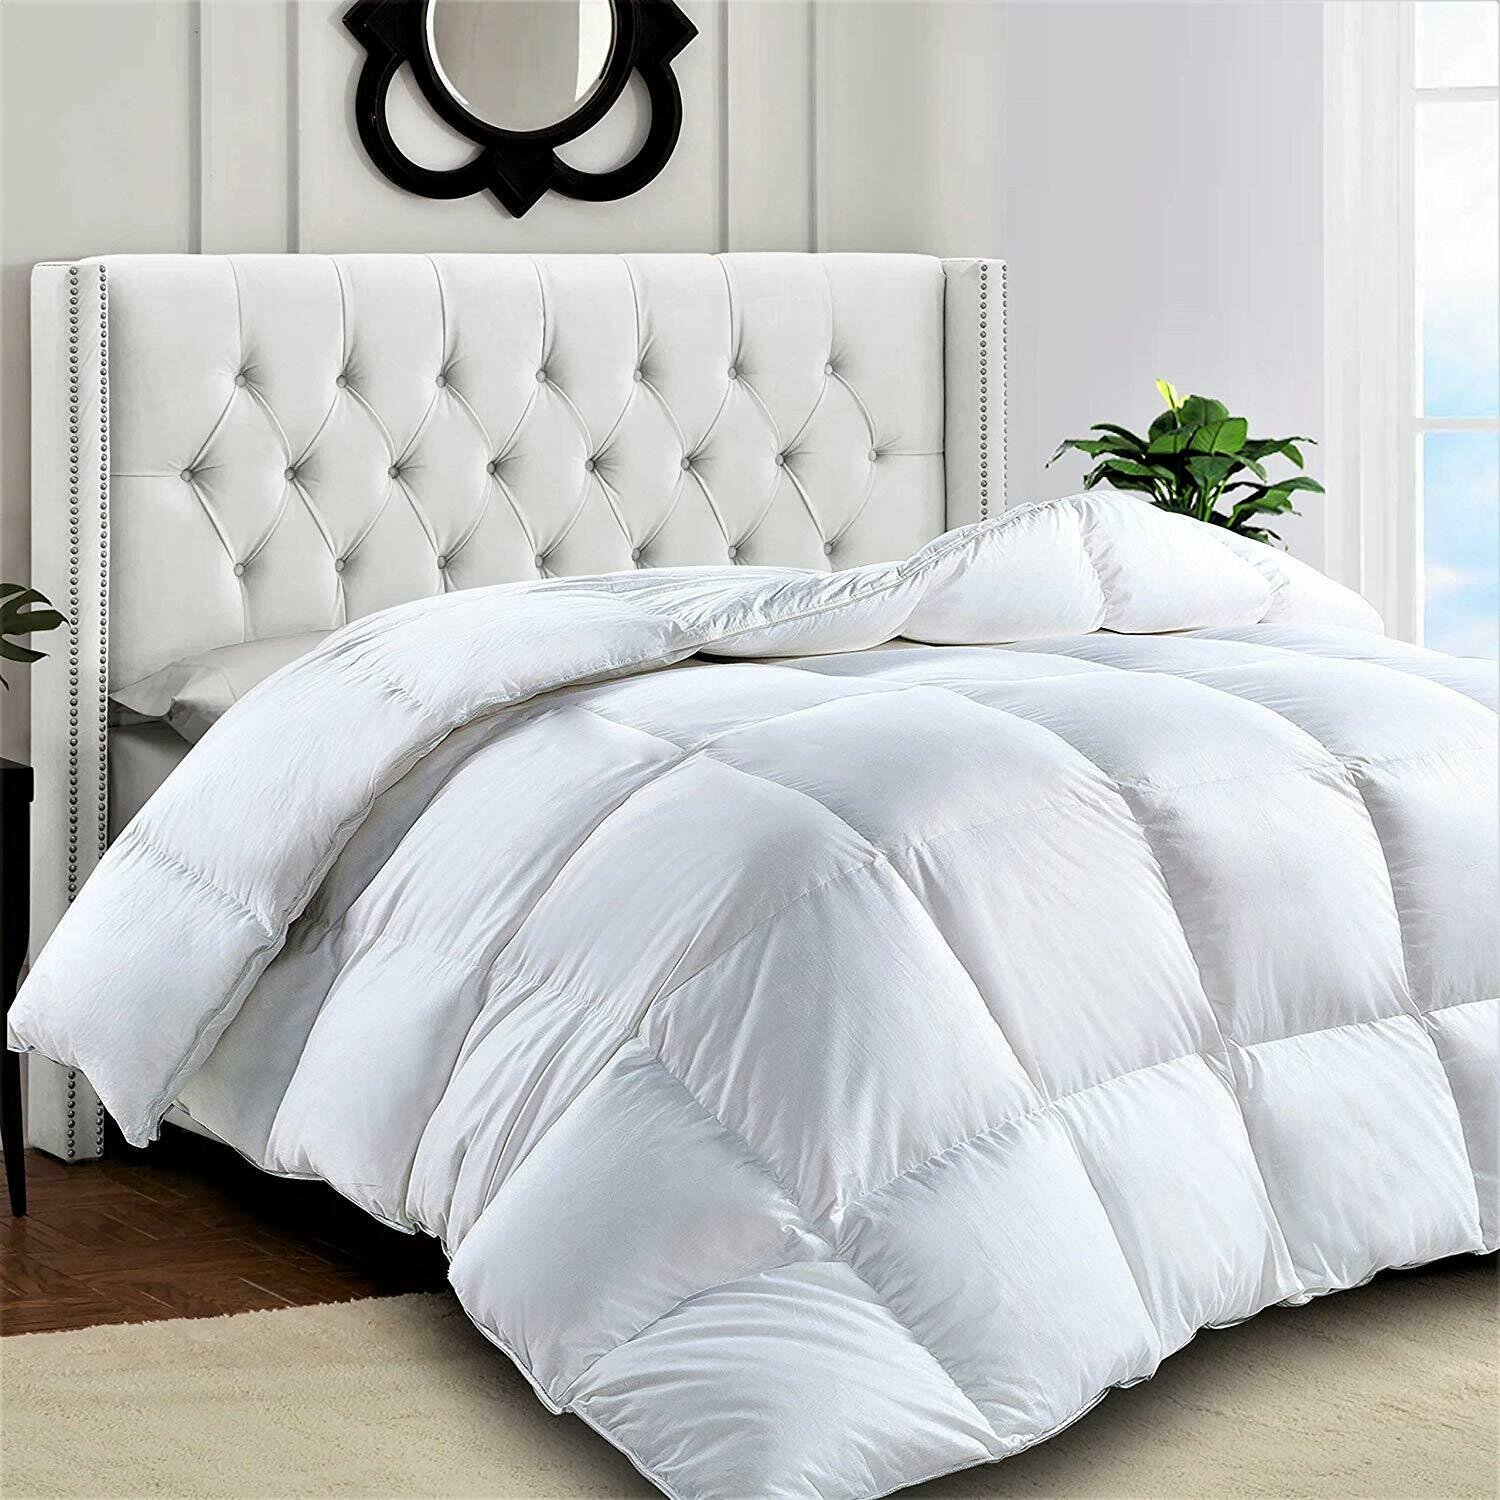 Comforters Comforter Sets You Ll Love In 2021 Wayfair